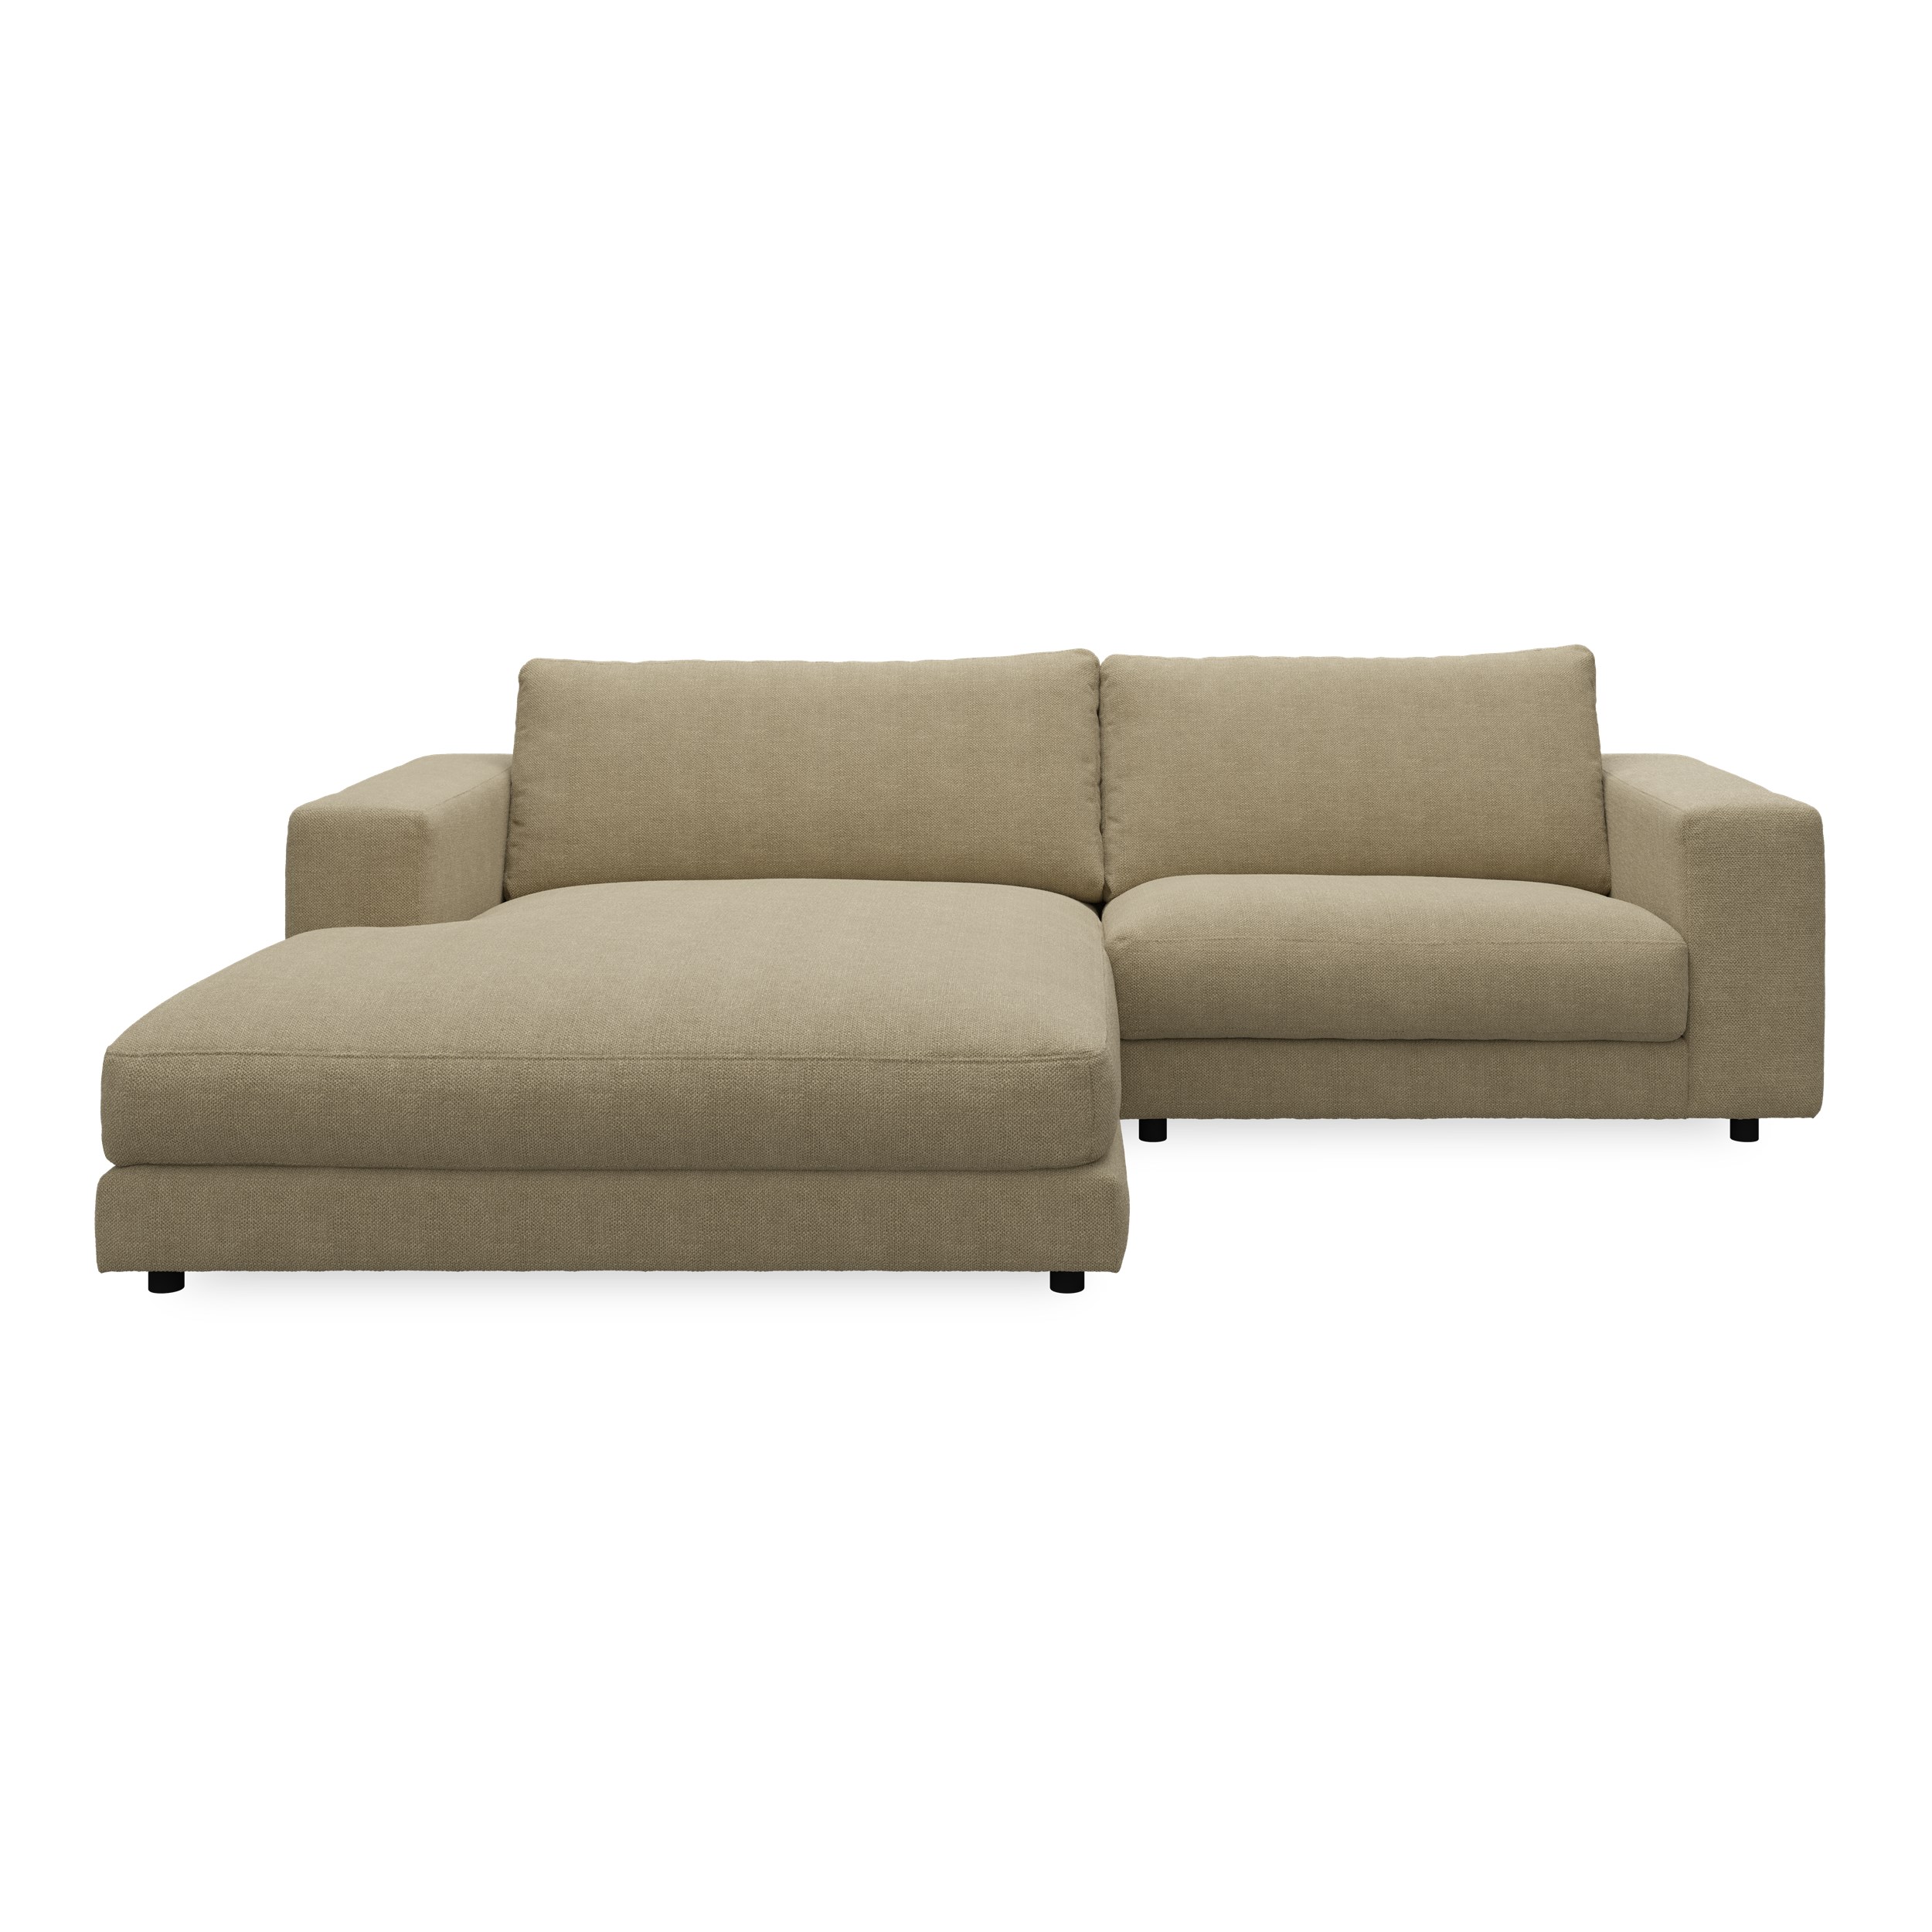 Bennent vänstervänd soffa med schäslong - Picasso Sand klädsel, ben i svart plast och S:skum/fib/din/sili R:Dun/skum